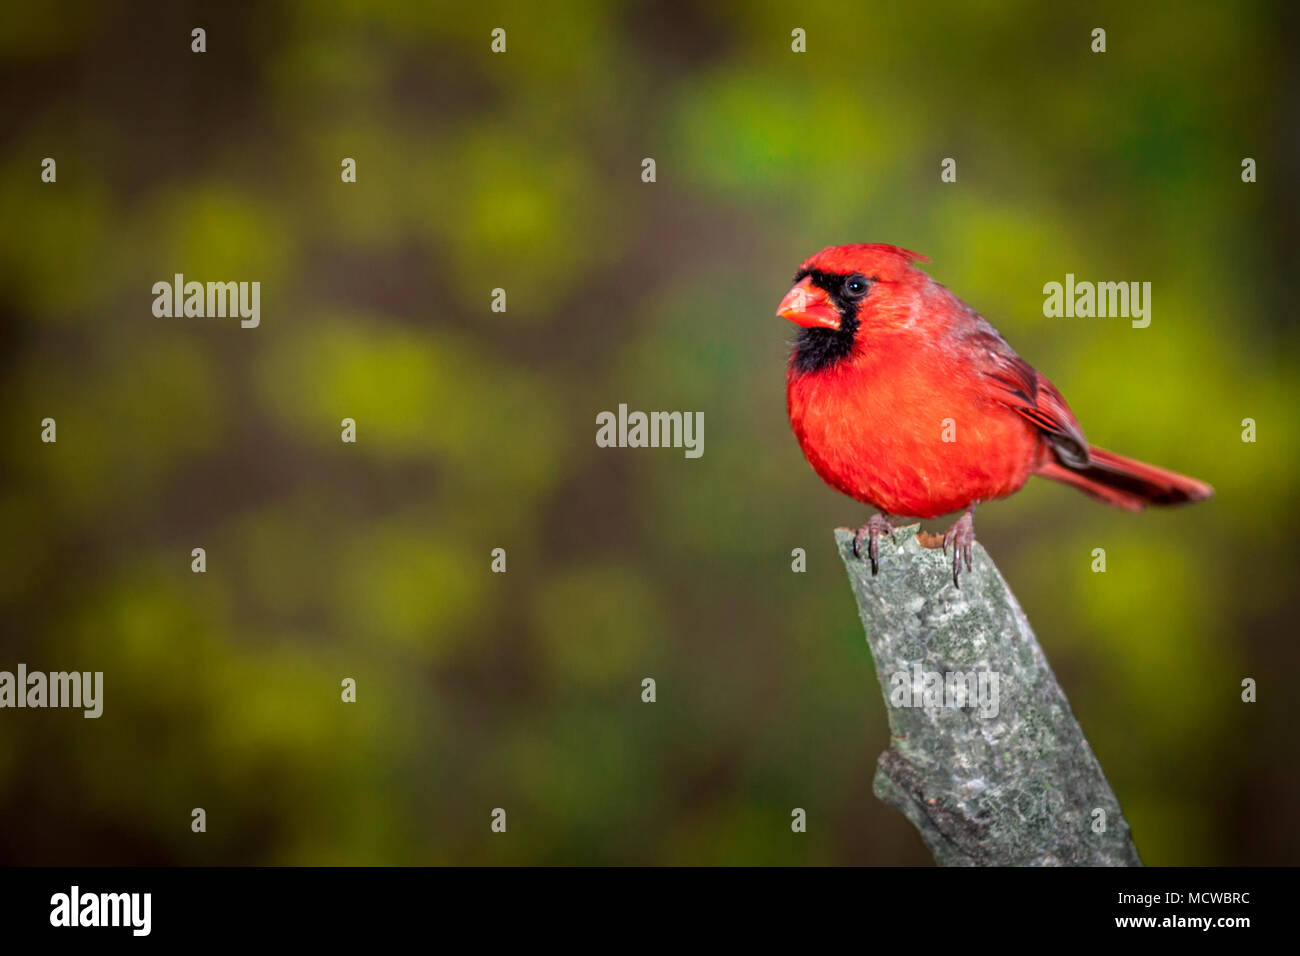 Le Cardinal rouge mâle perché sur une branche contre un arrière-plan flou Banque D'Images